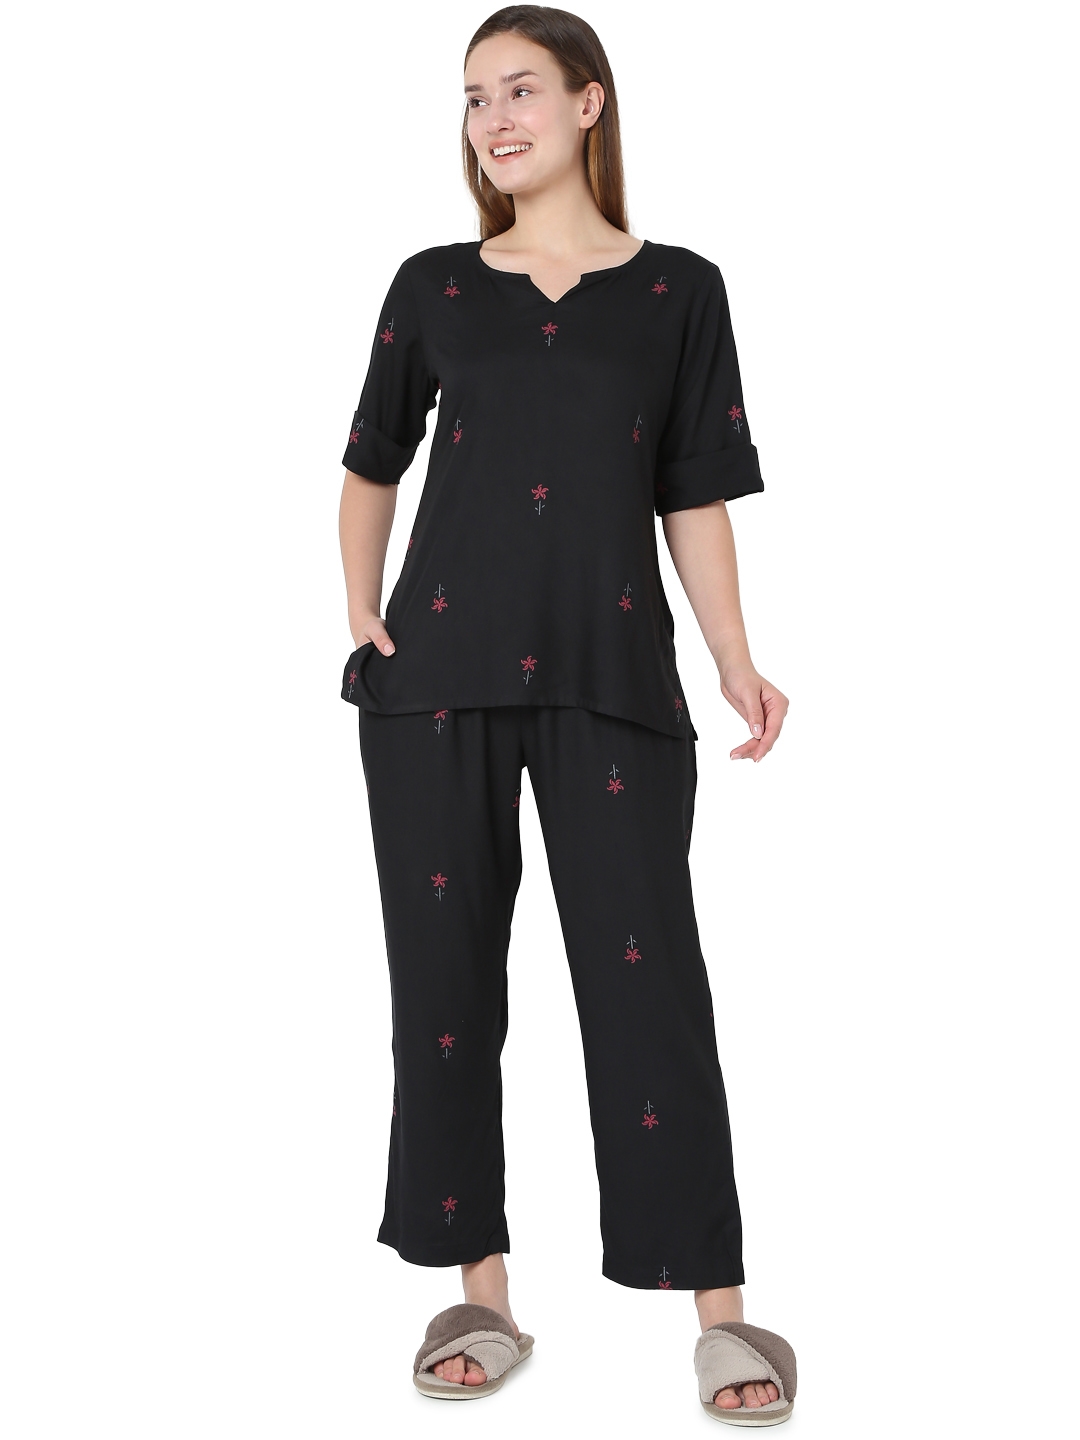 Smarty Pants | Smarty Pants women's cotton black floral print night suit. 